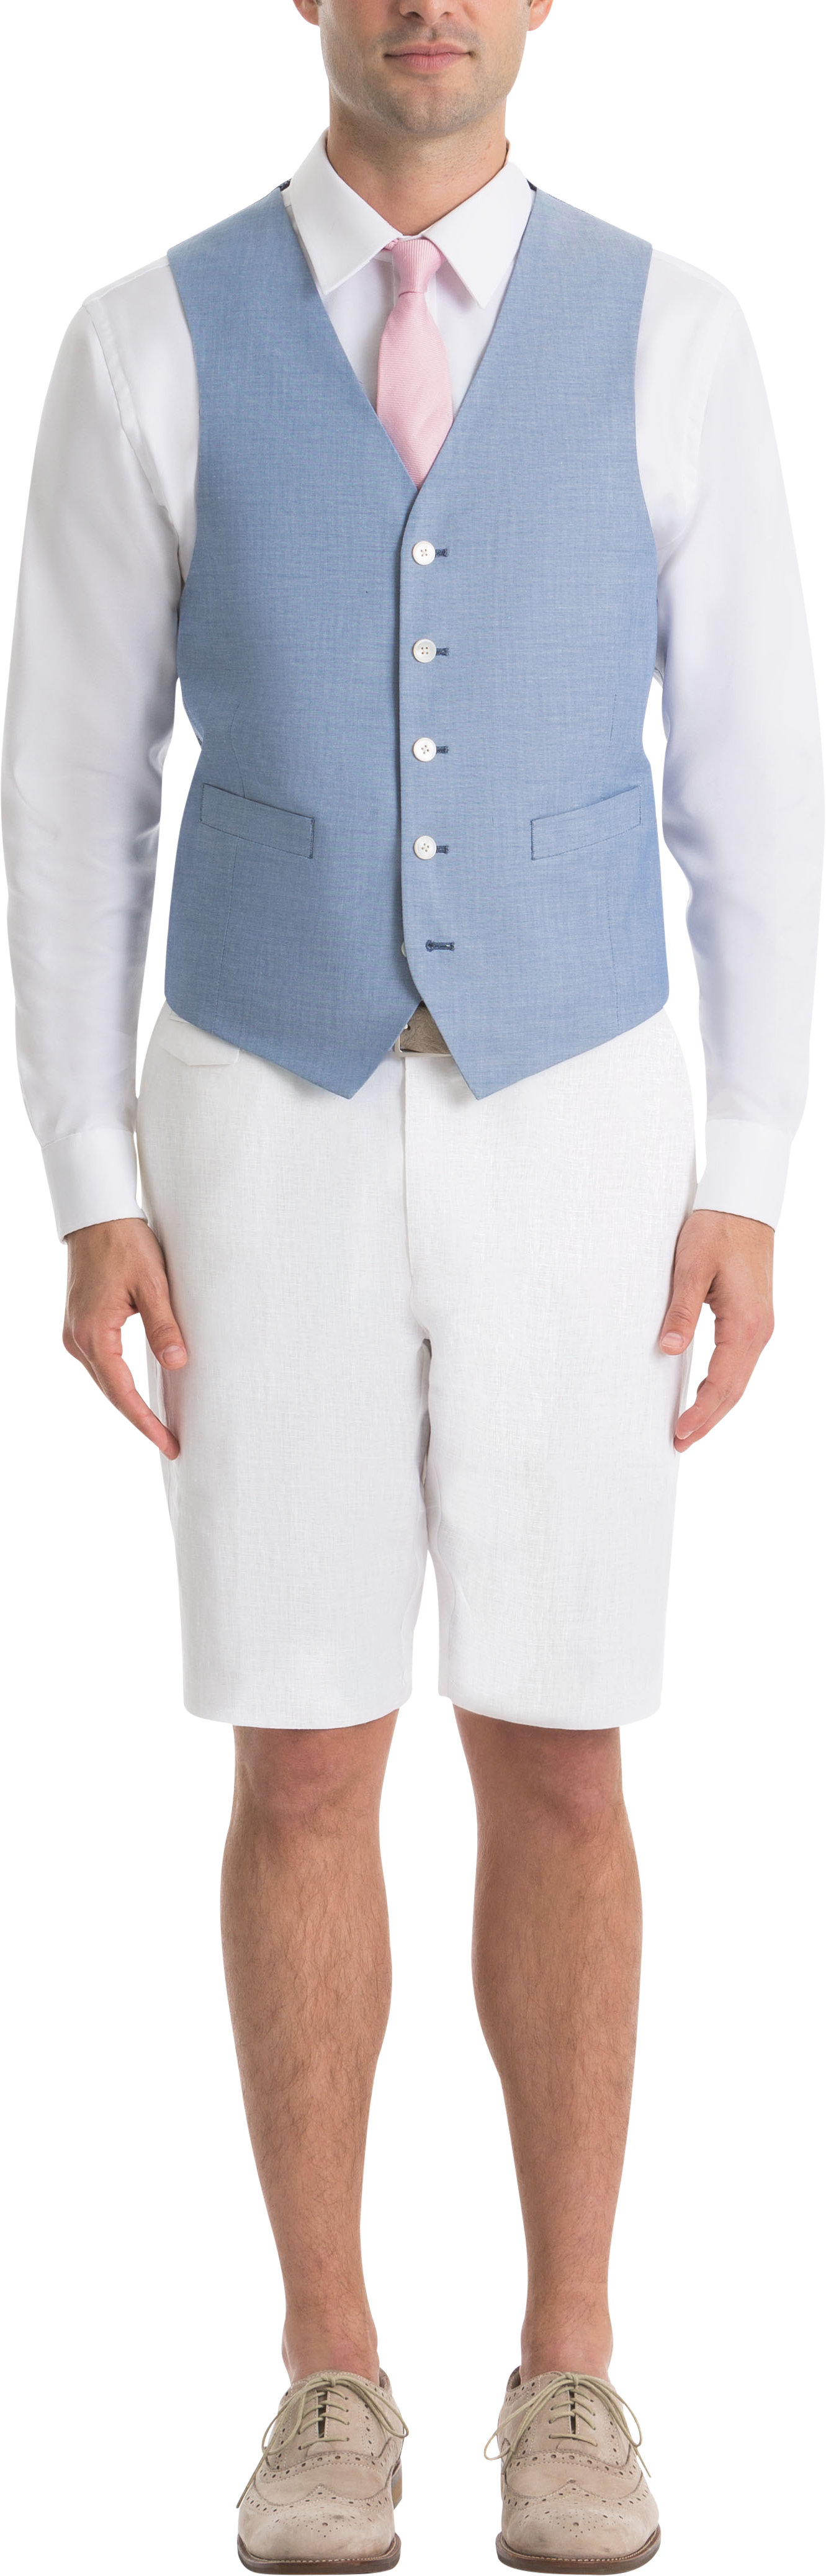 Lauren By Ralph Lauren Classic Fit Suit Separates Vest, Light Blue Chambray